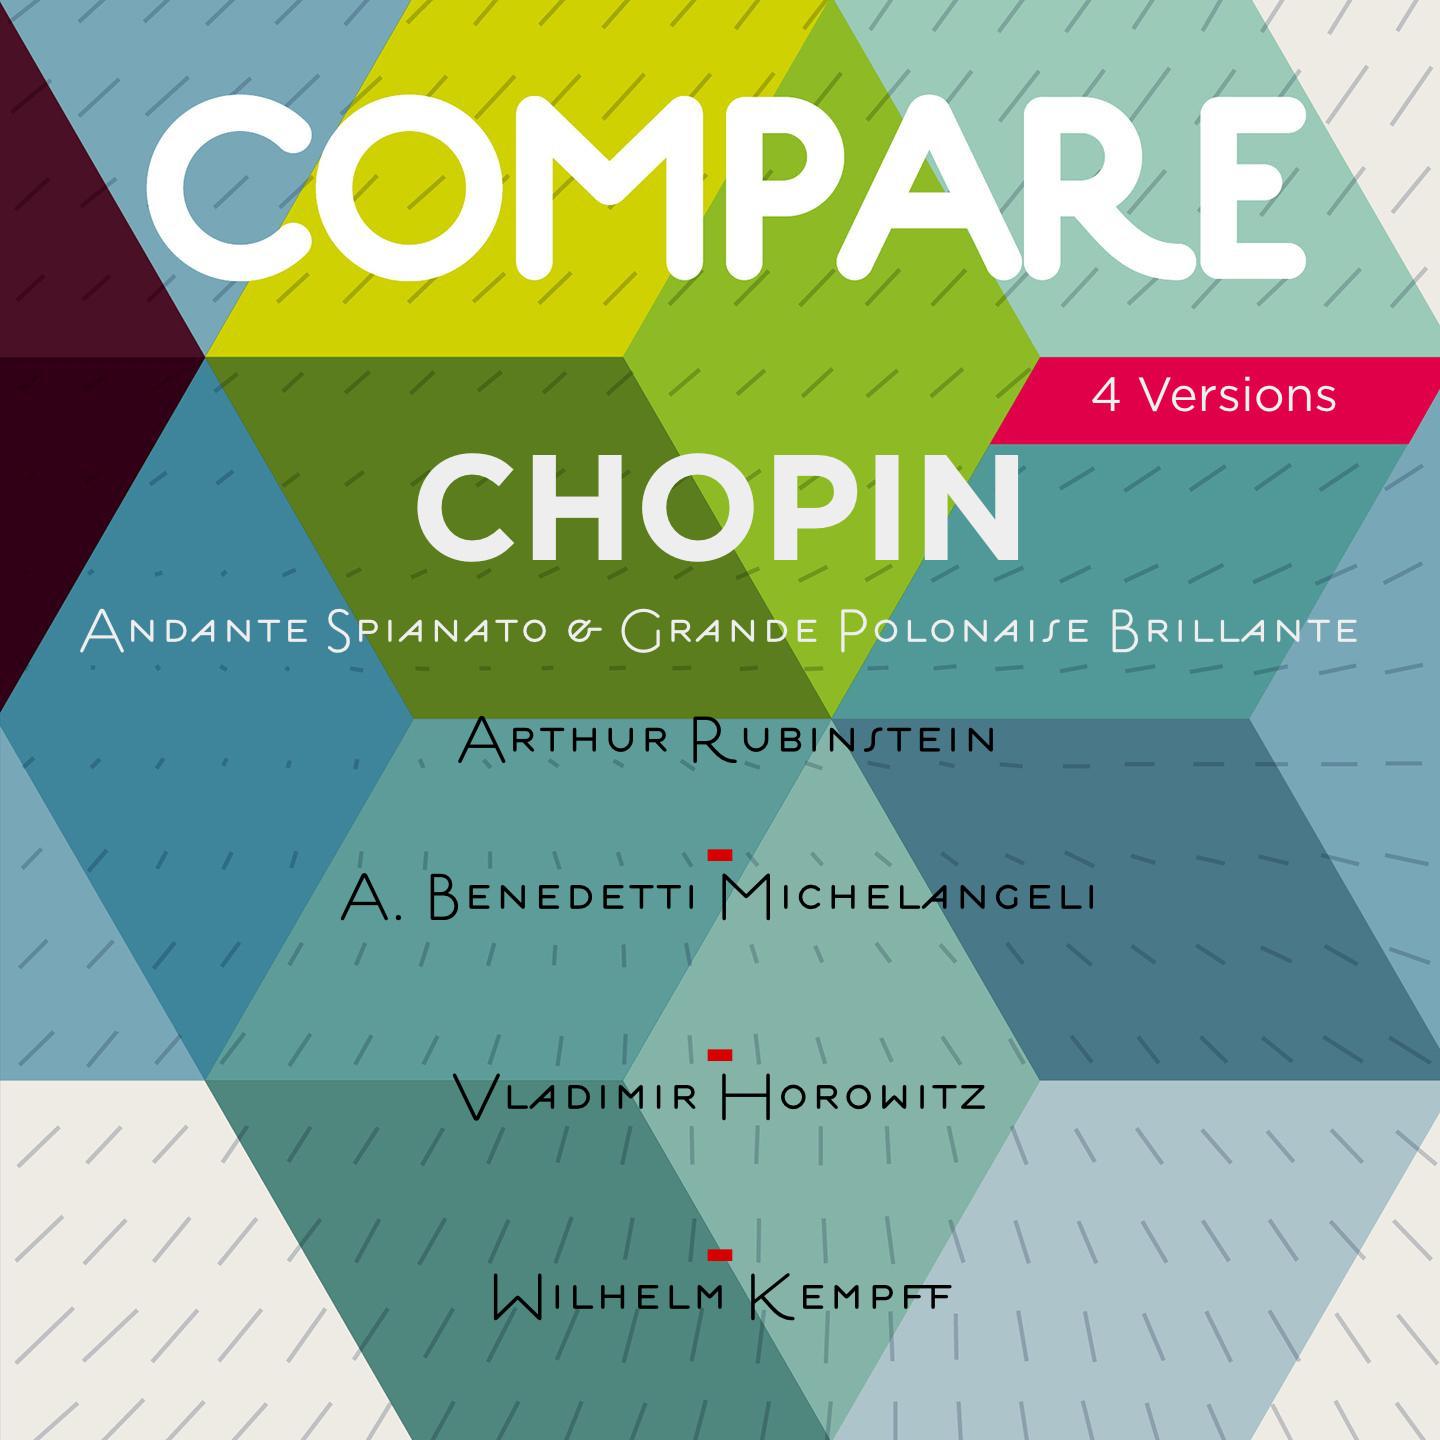 Chopin: Andante spianato et grande polonaise brillante, Arthur Rubinstein vs. Arturo Benedetti Michelangeli vs. Vladimir Horowitz vs. Wilhelm Kempff (Compare 2 Versions)